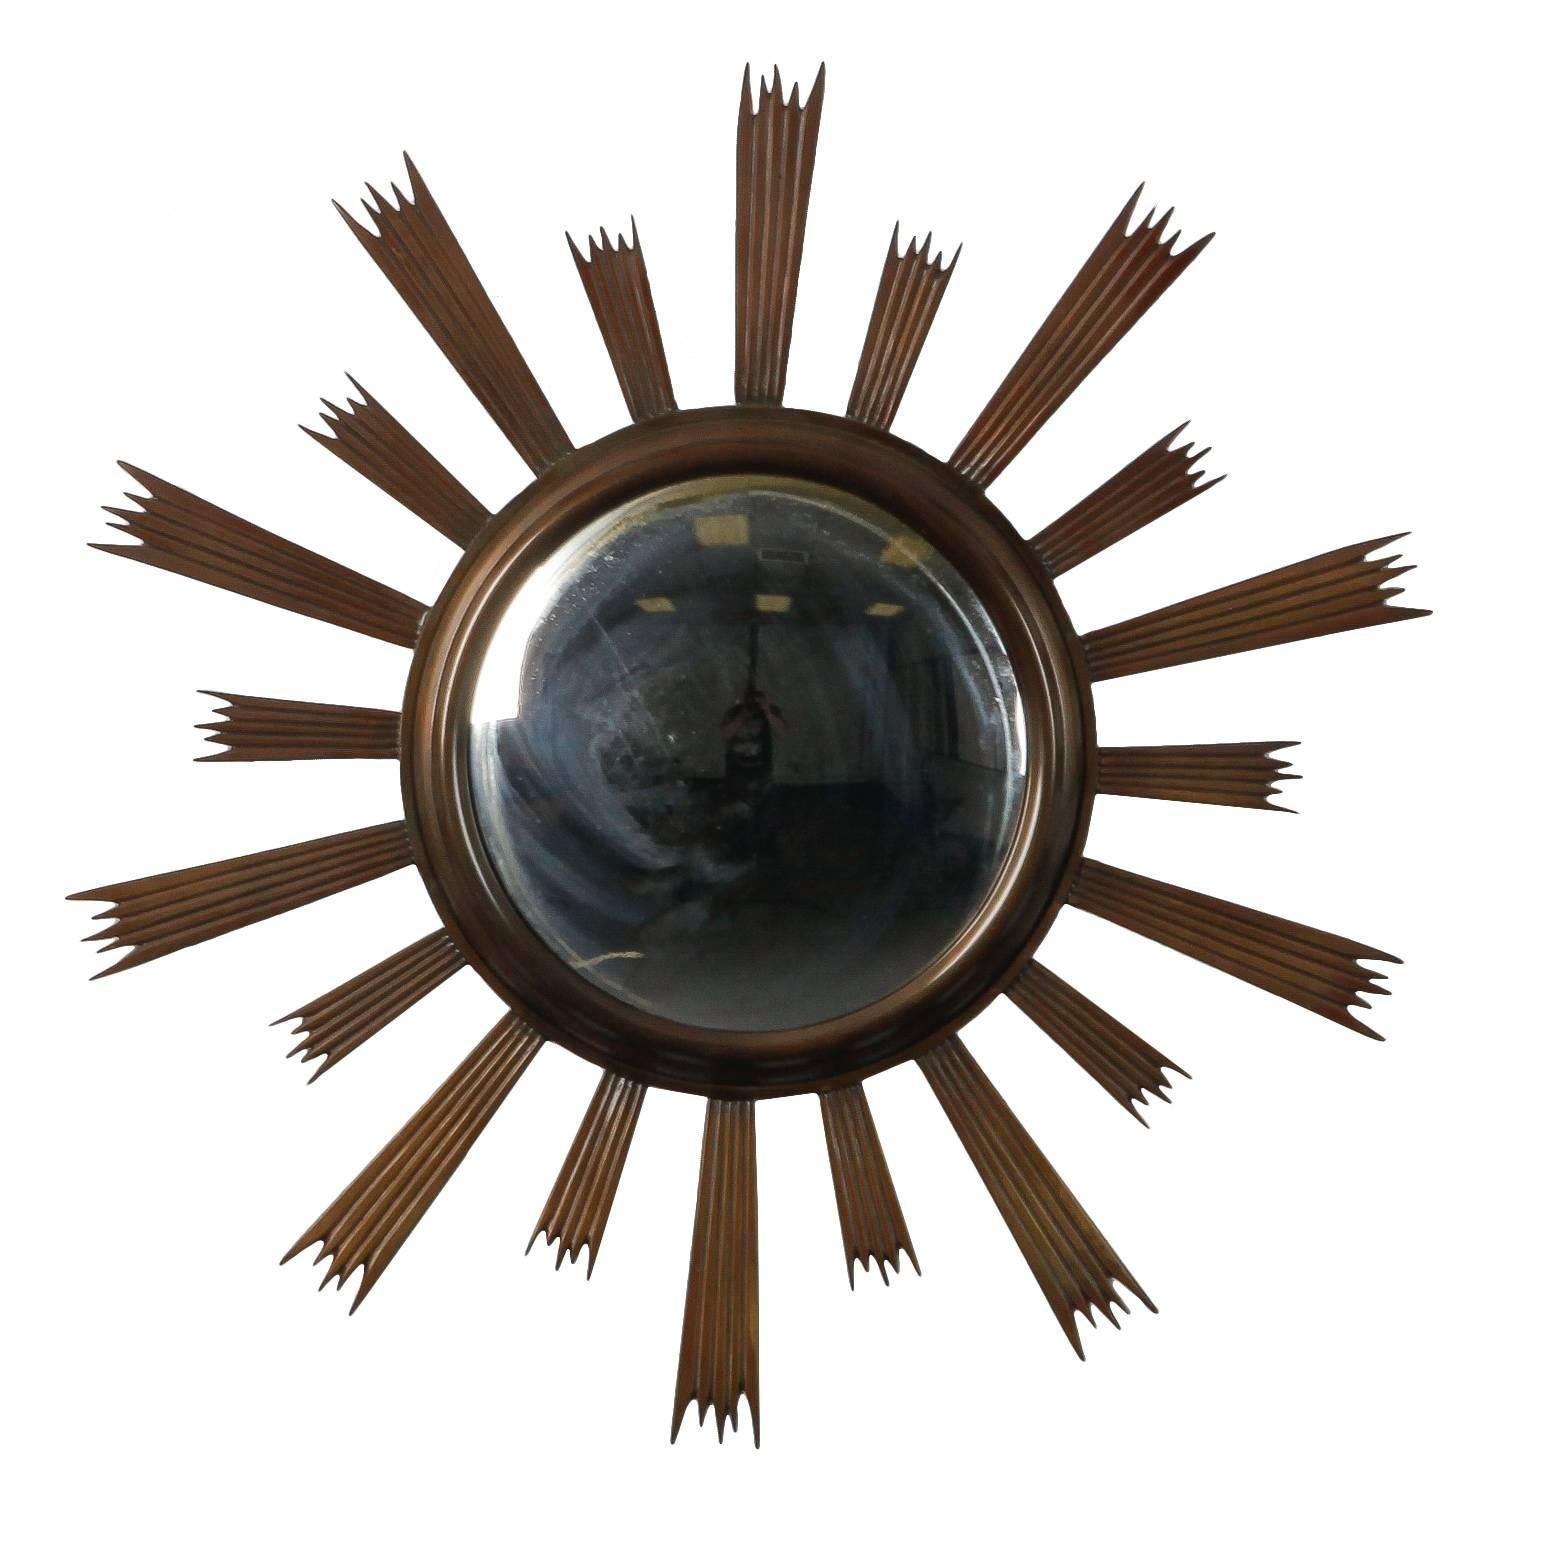 Sunburst Convex Mirror with Dark Metal Frame